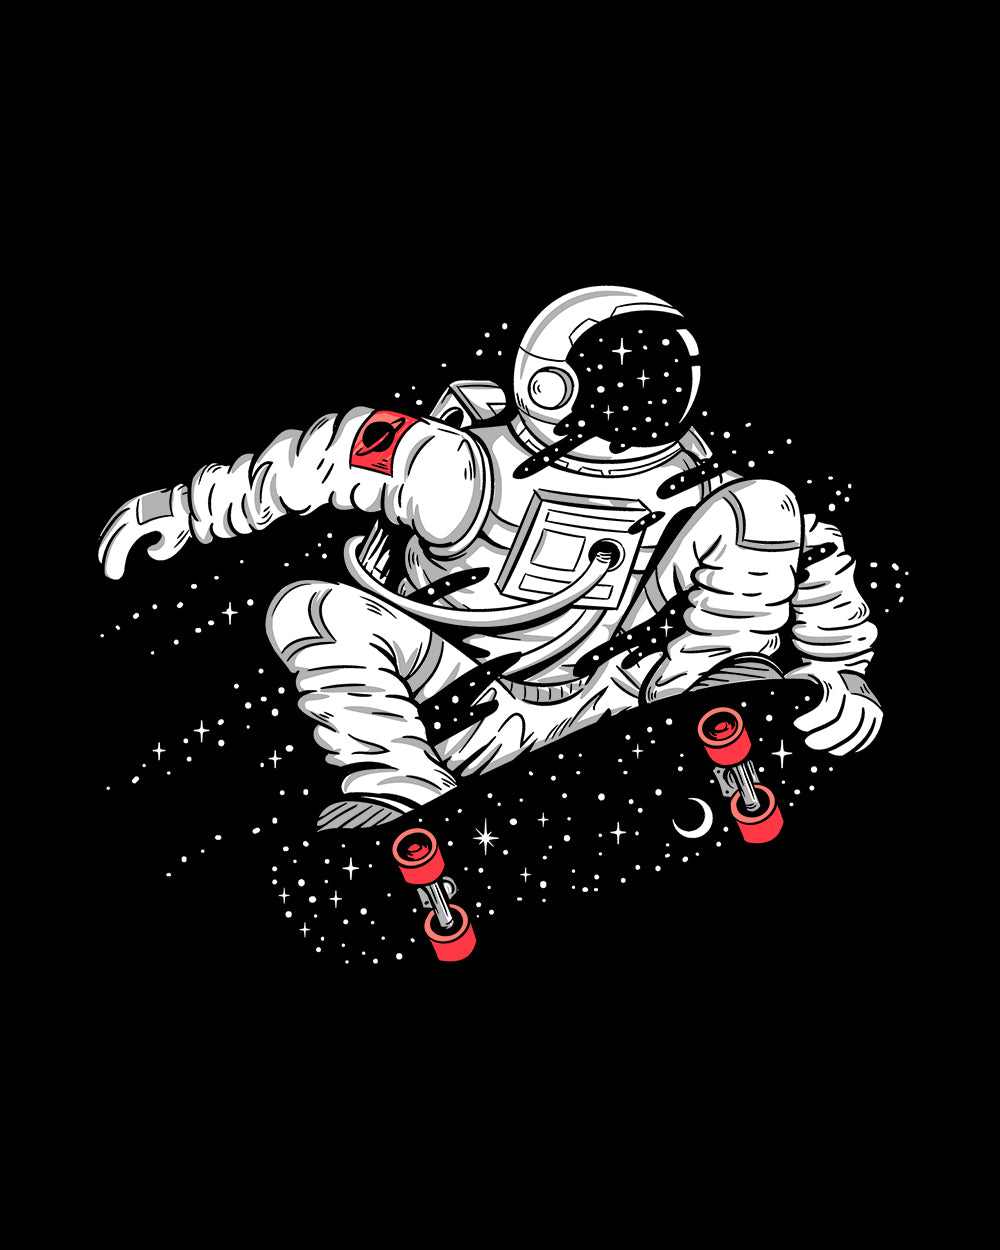 Space Boarding Kids T-Shirt Australia Online #colour_black